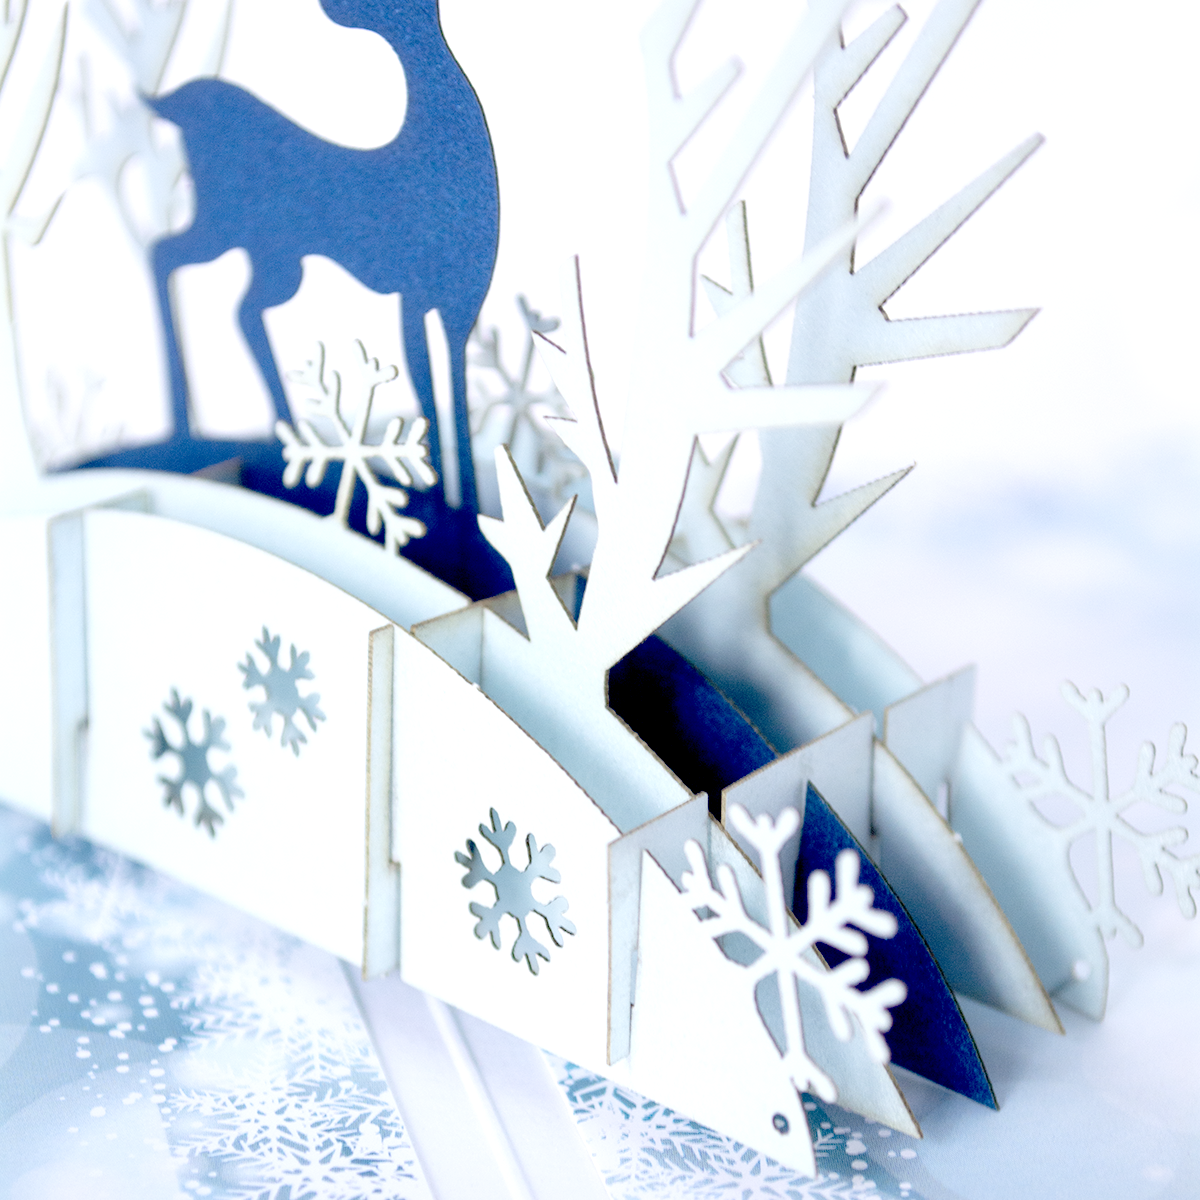 Объемная 3D открытка «Рождественский олень»